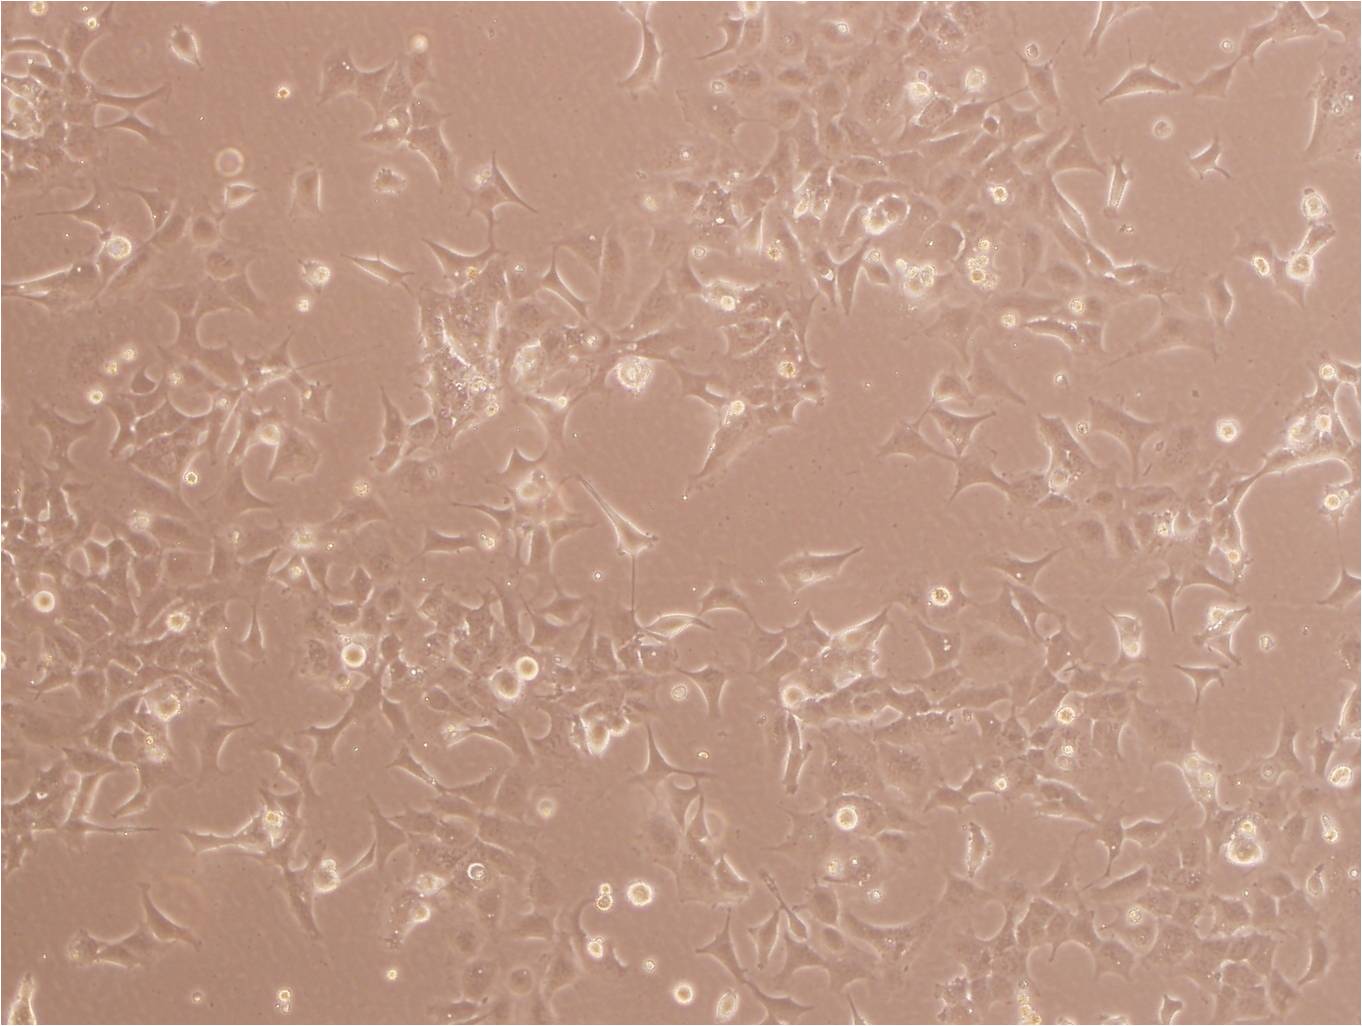 U-373MG ATCC人胶质瘤复苏细胞(附STR鉴定报告),U-373MG ATCC